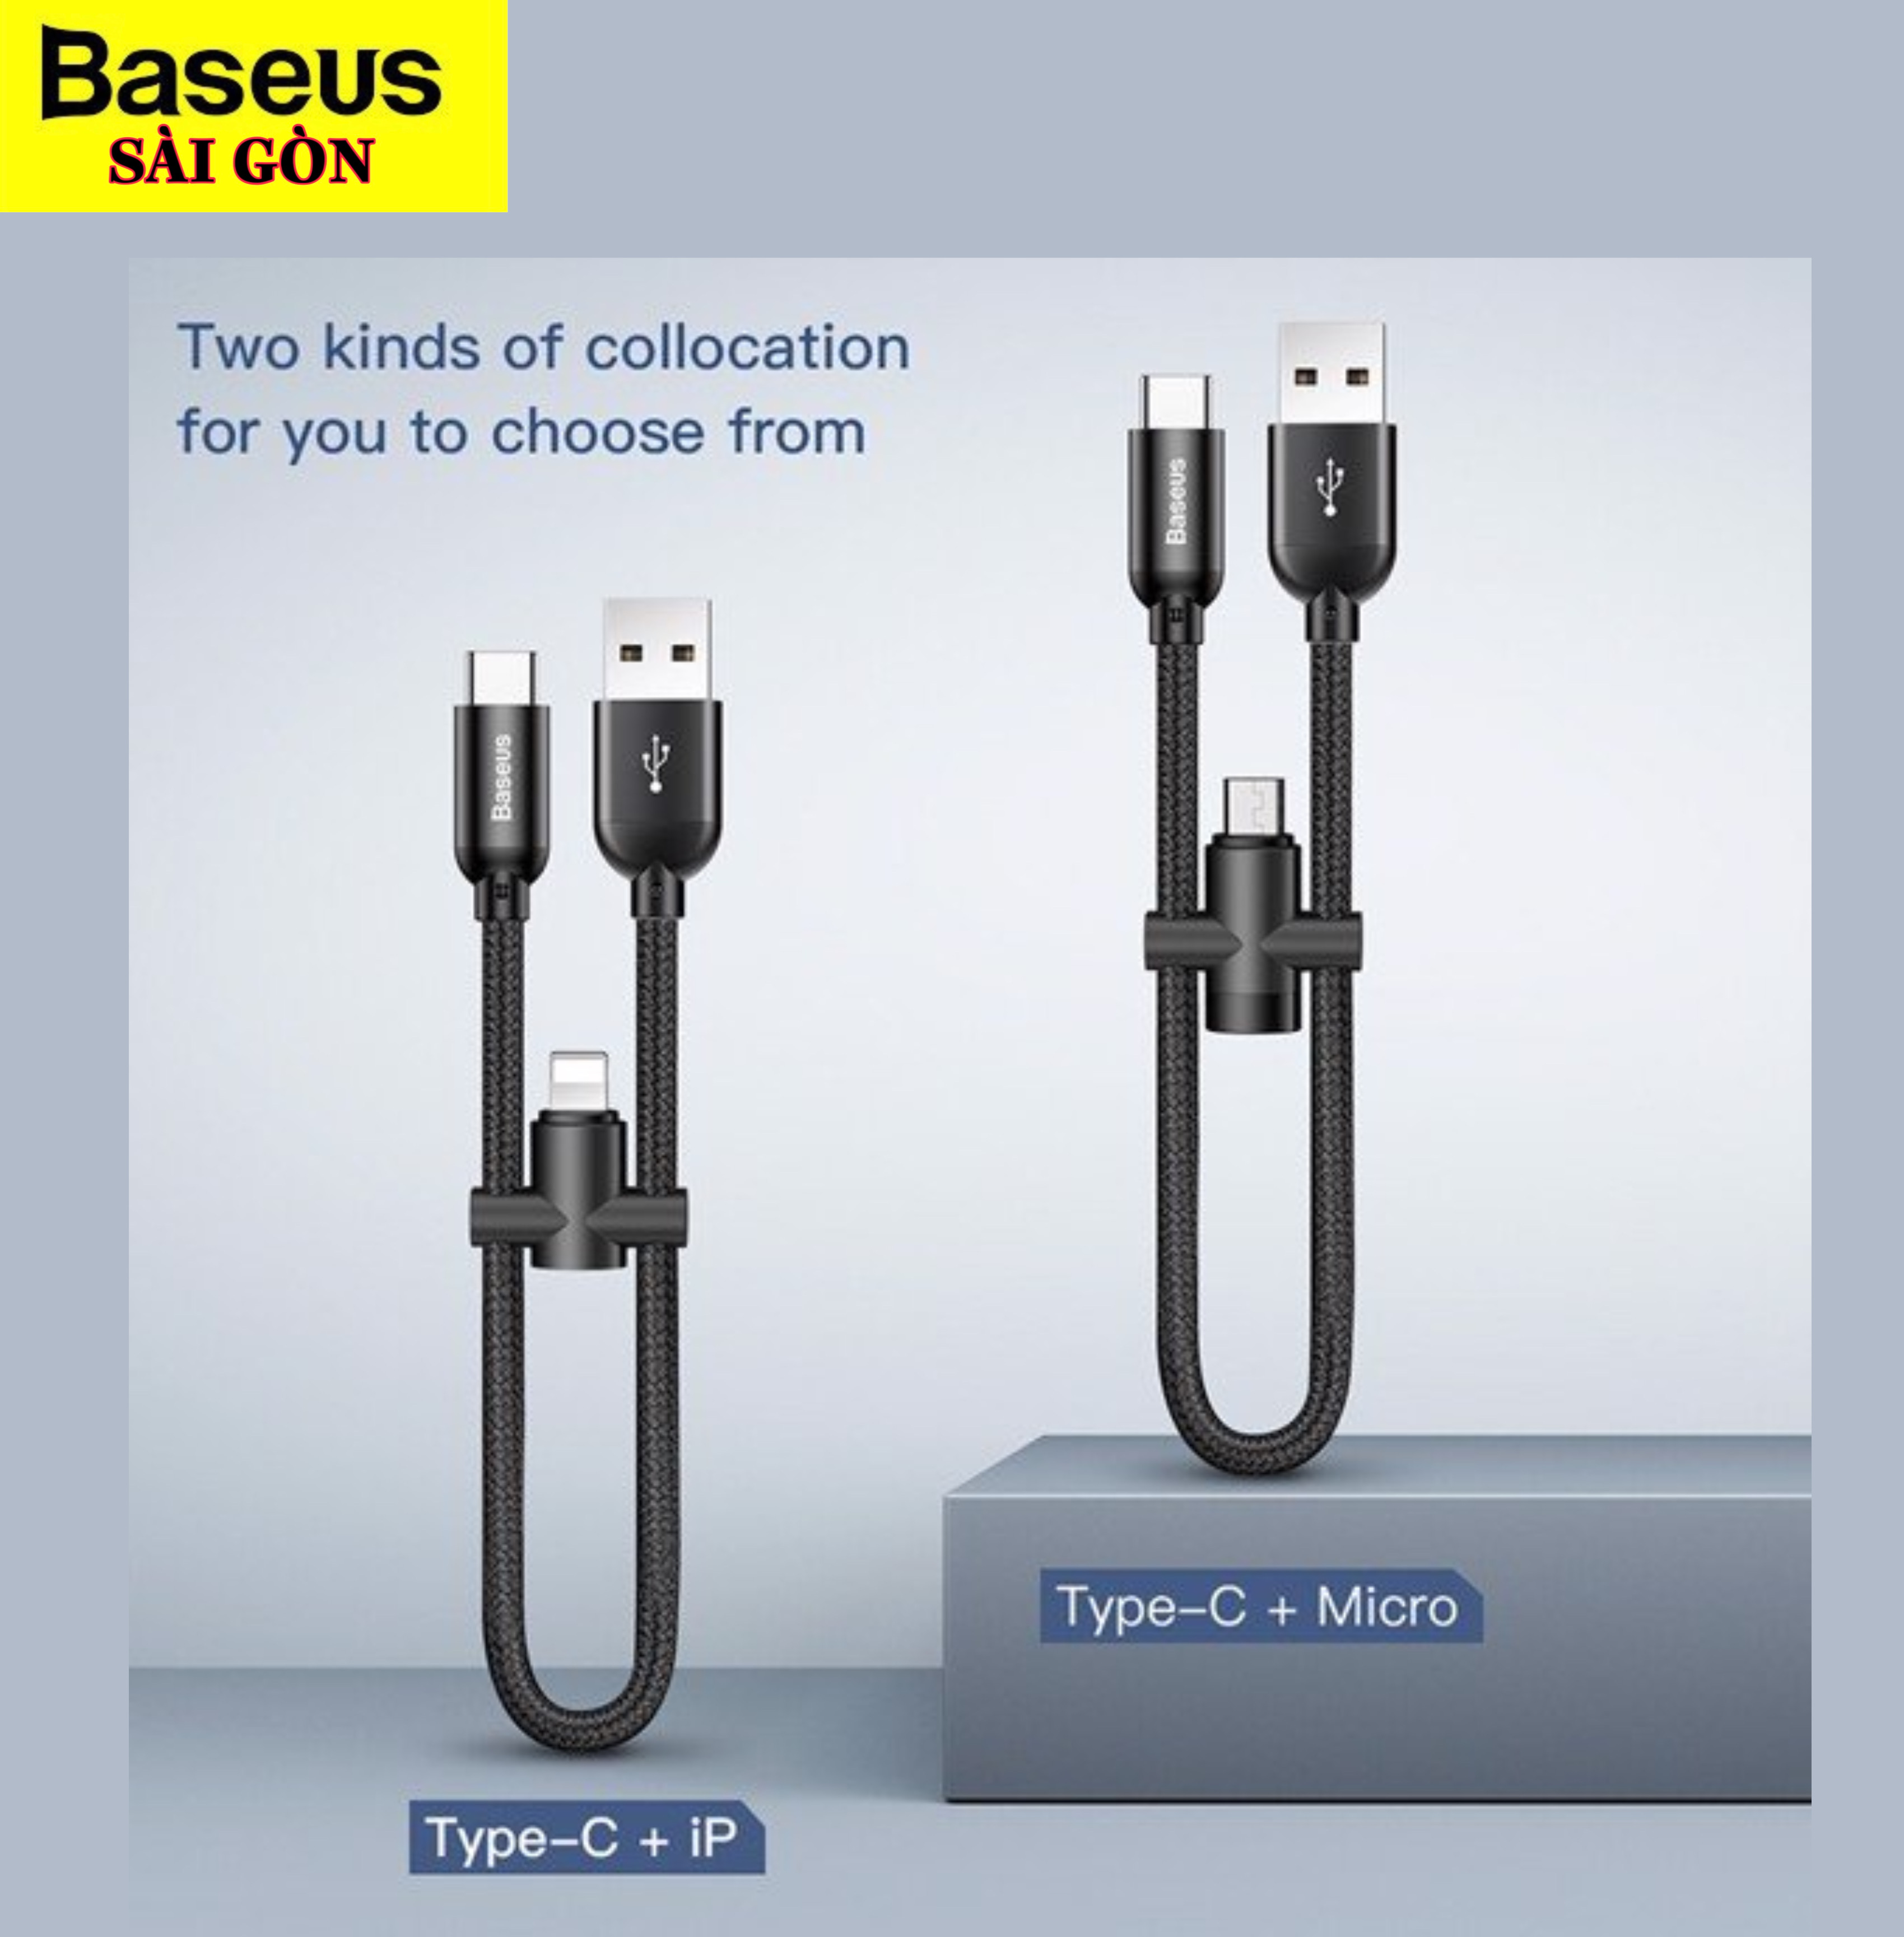 Cáp sạc nhanh Type C Baseus U-Shaped Portable tích hợp đầu chuyển Type C -  Lightning/ Micro USB (, 23cm, Quick charge , with OTG Adapter) |  BASEUS SAIGON - Đại lý